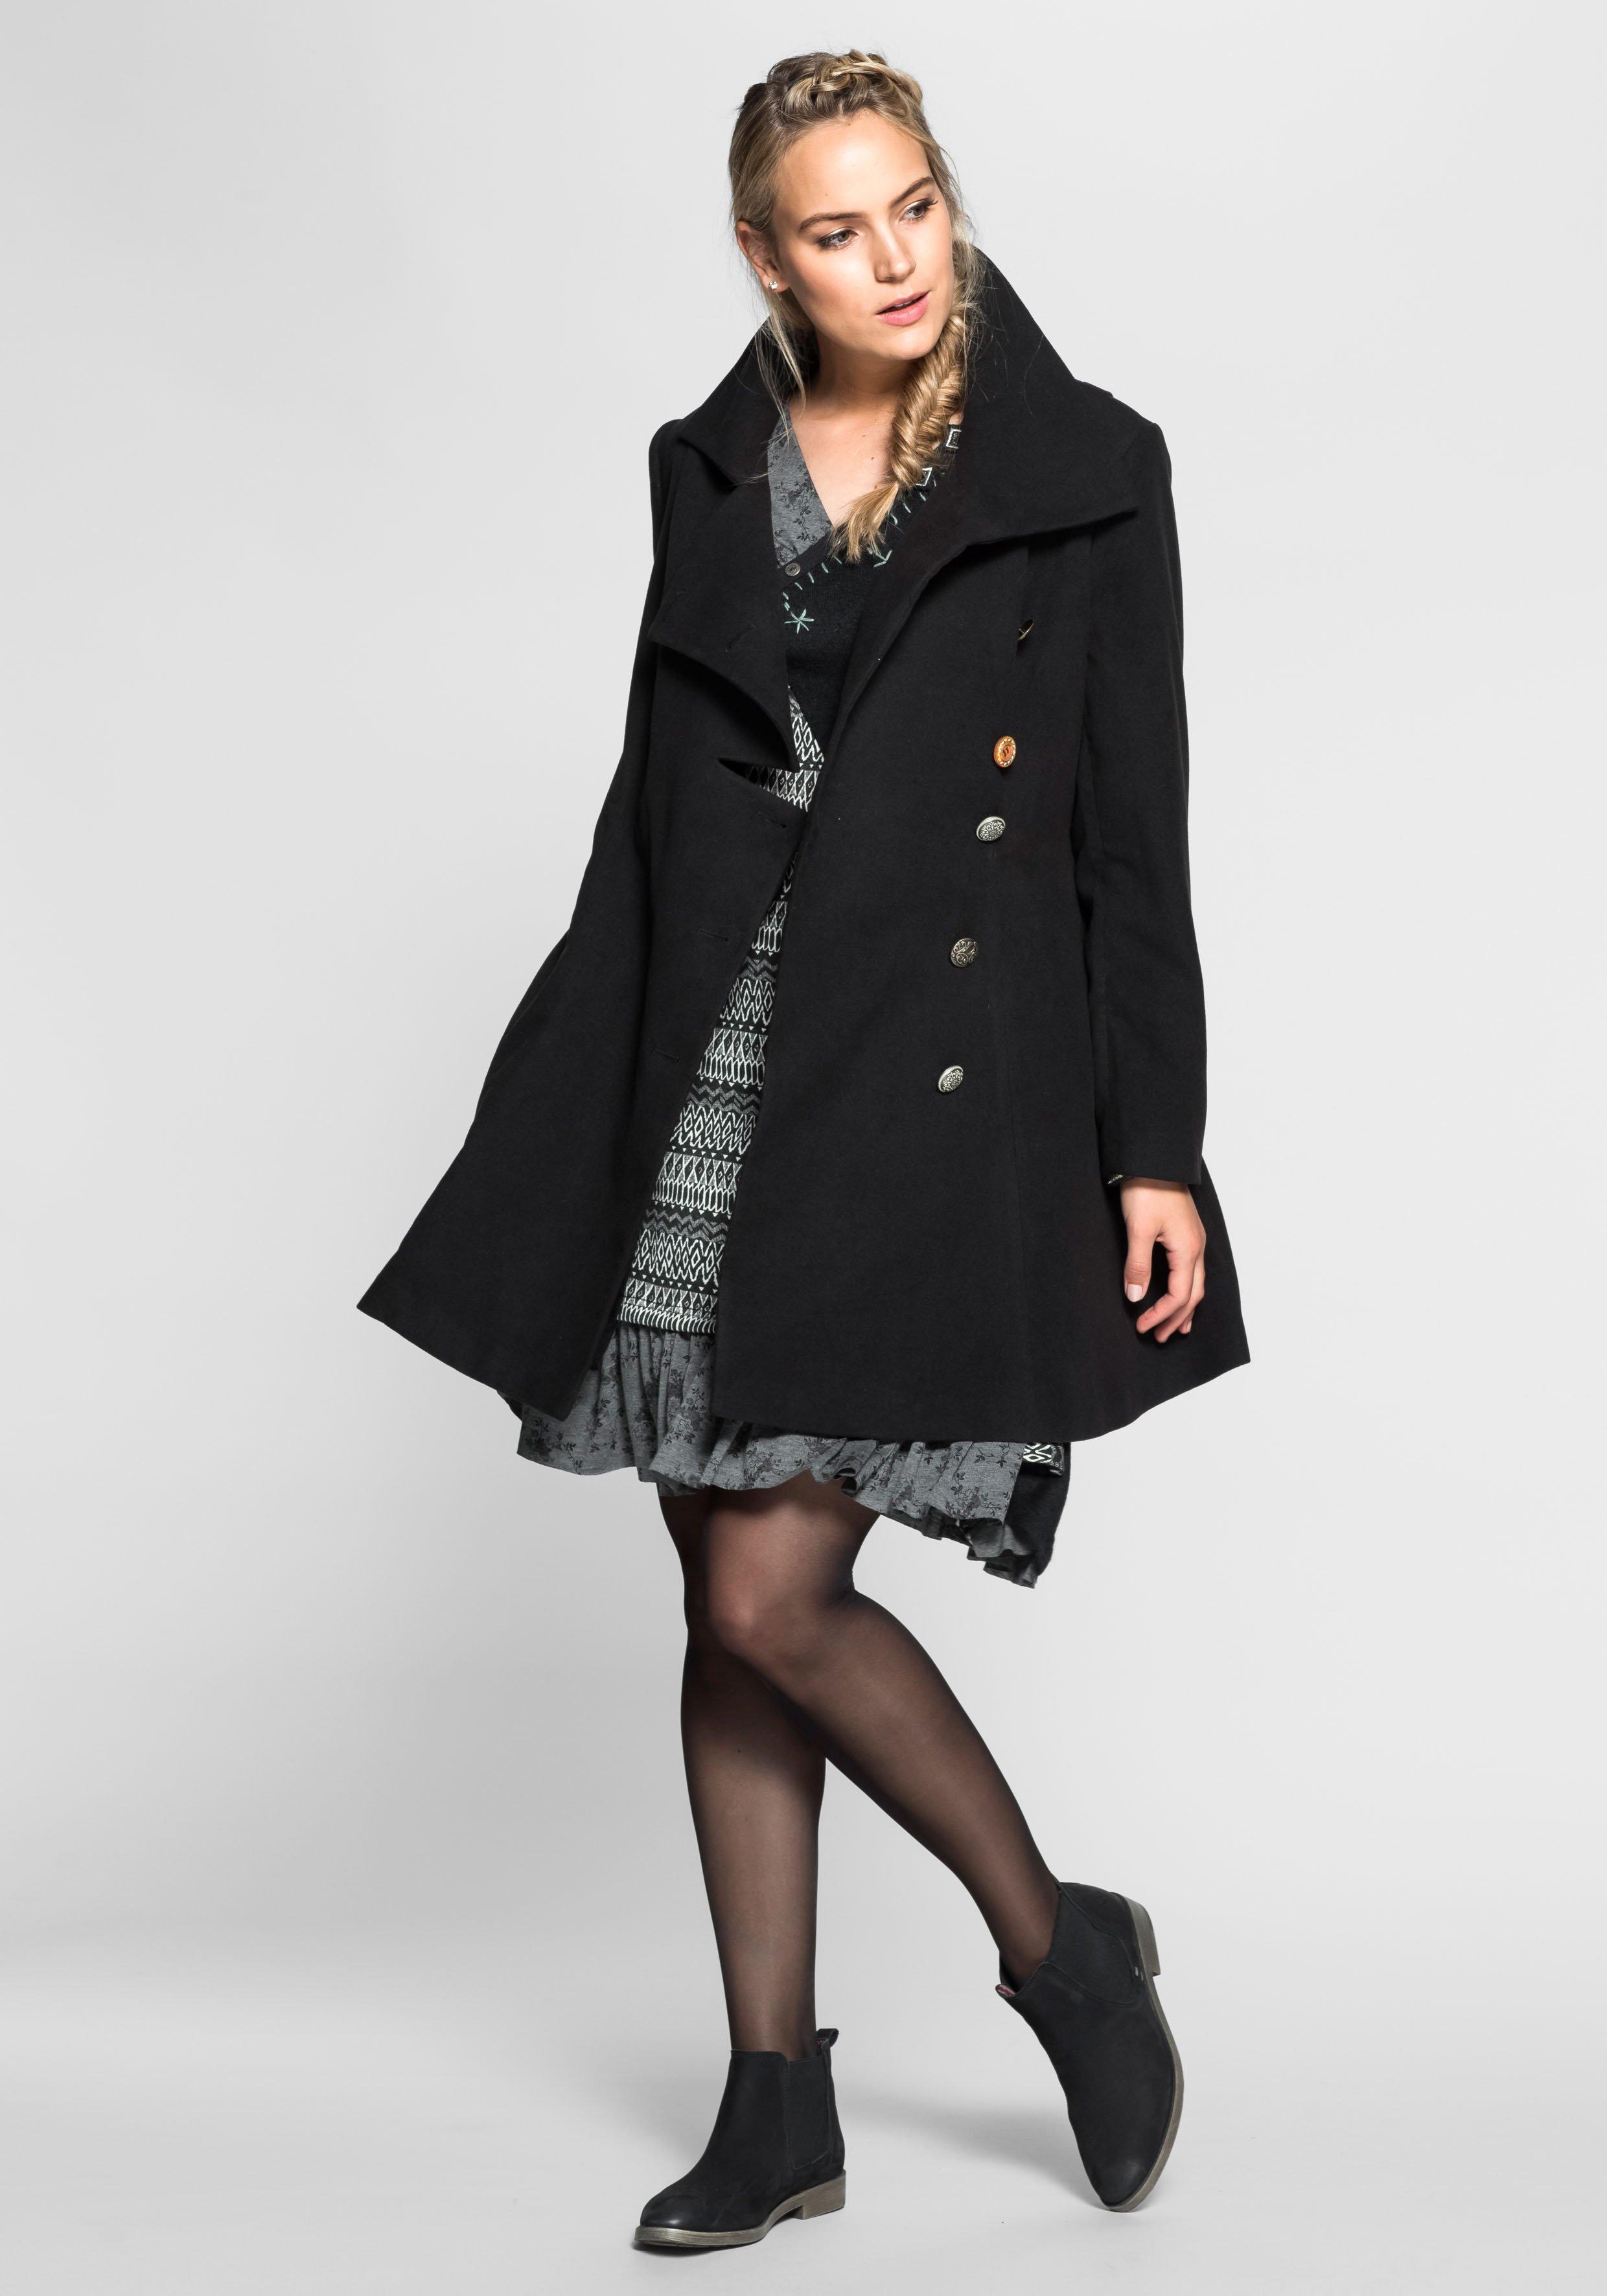 Damen Jacken & Mäntel große Größen › Größe 46 | sheego ♥ Plus Size Mode